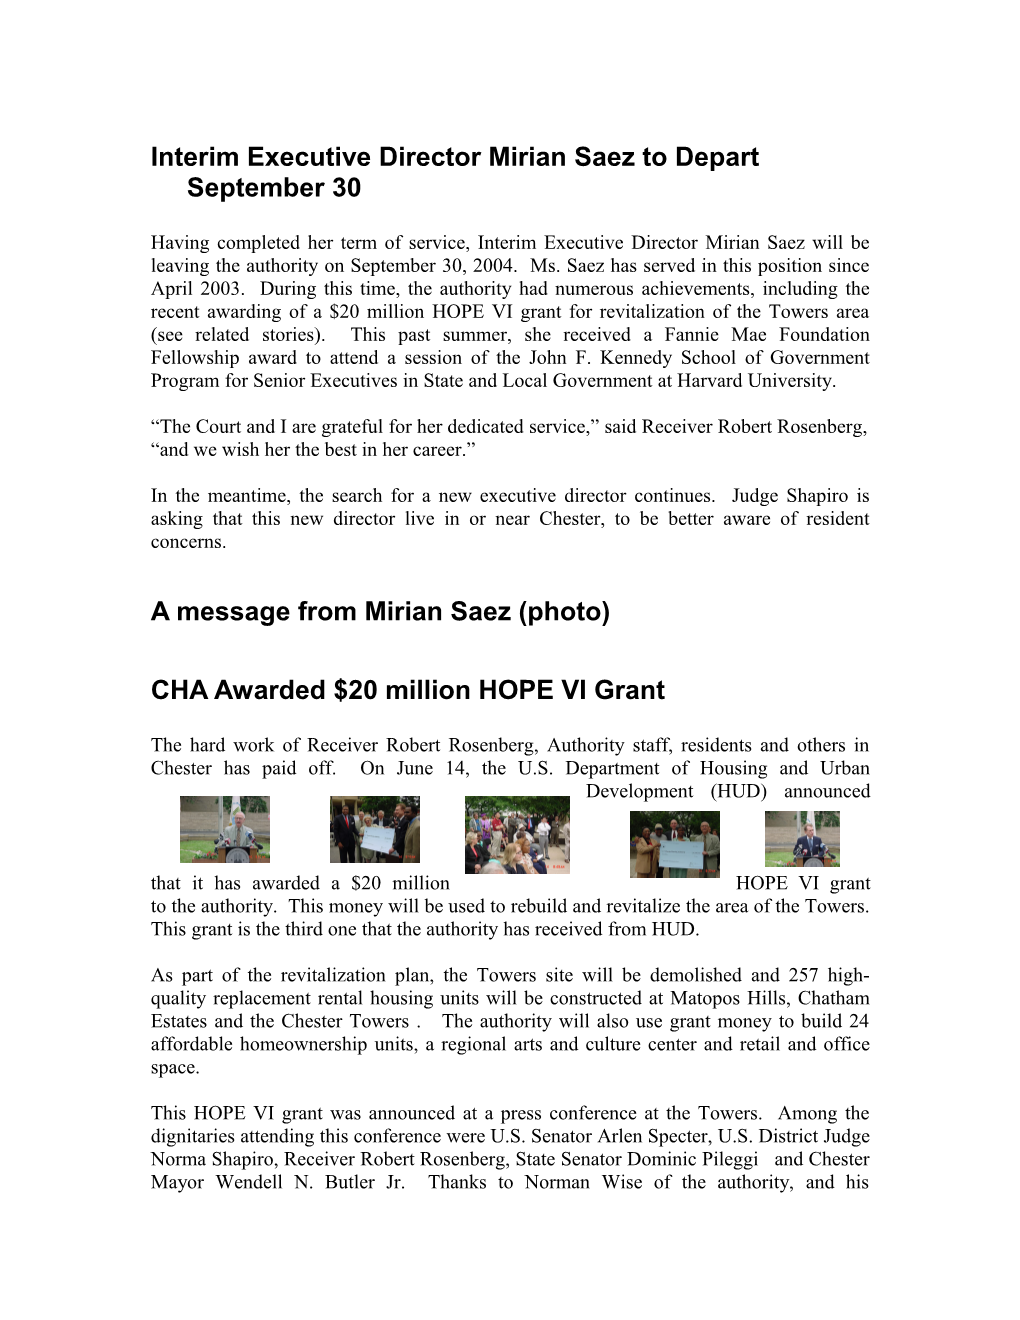 Interim Executive Director Mirian Saez to Depart September 30